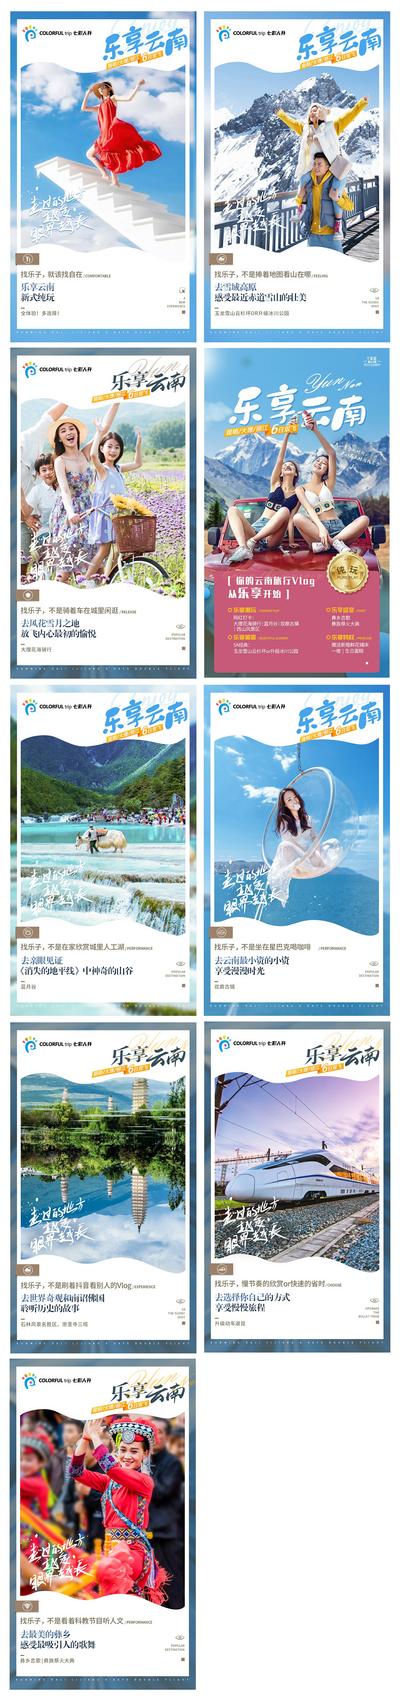 南门网 乐享云南旅游海报